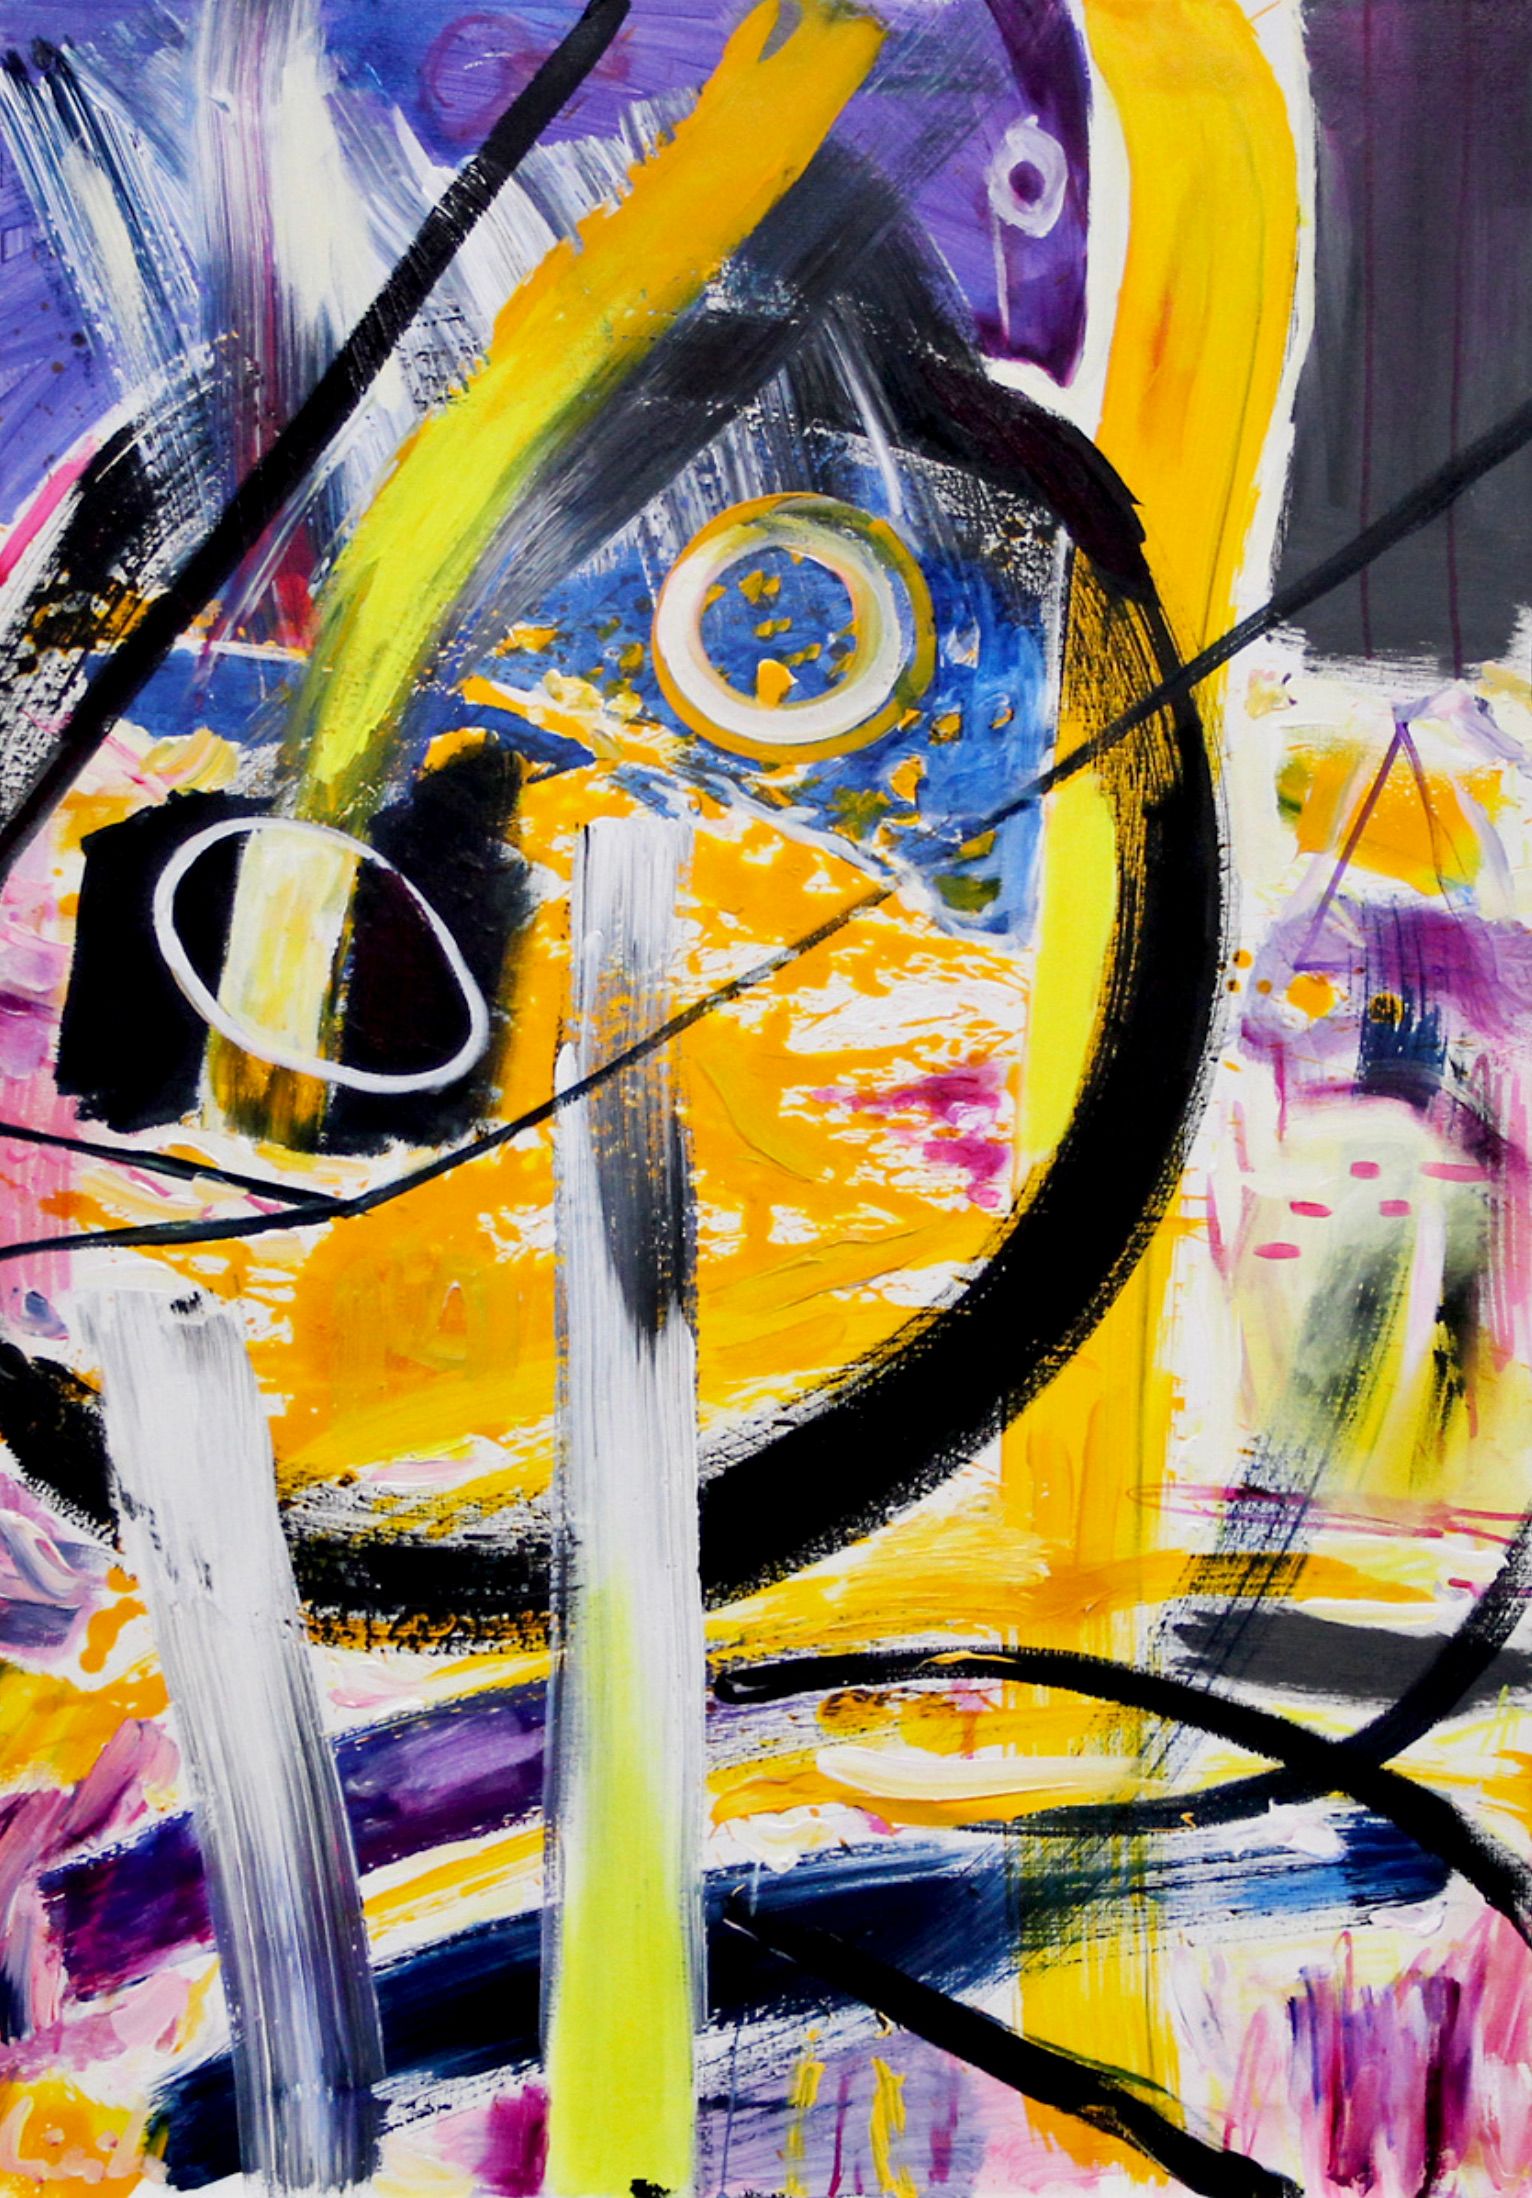 MECESLA Maciej Cieśla, "Cuadro inspirado en la música-Fatboy Slim", Pintura abstracta de colores sobre lienzo